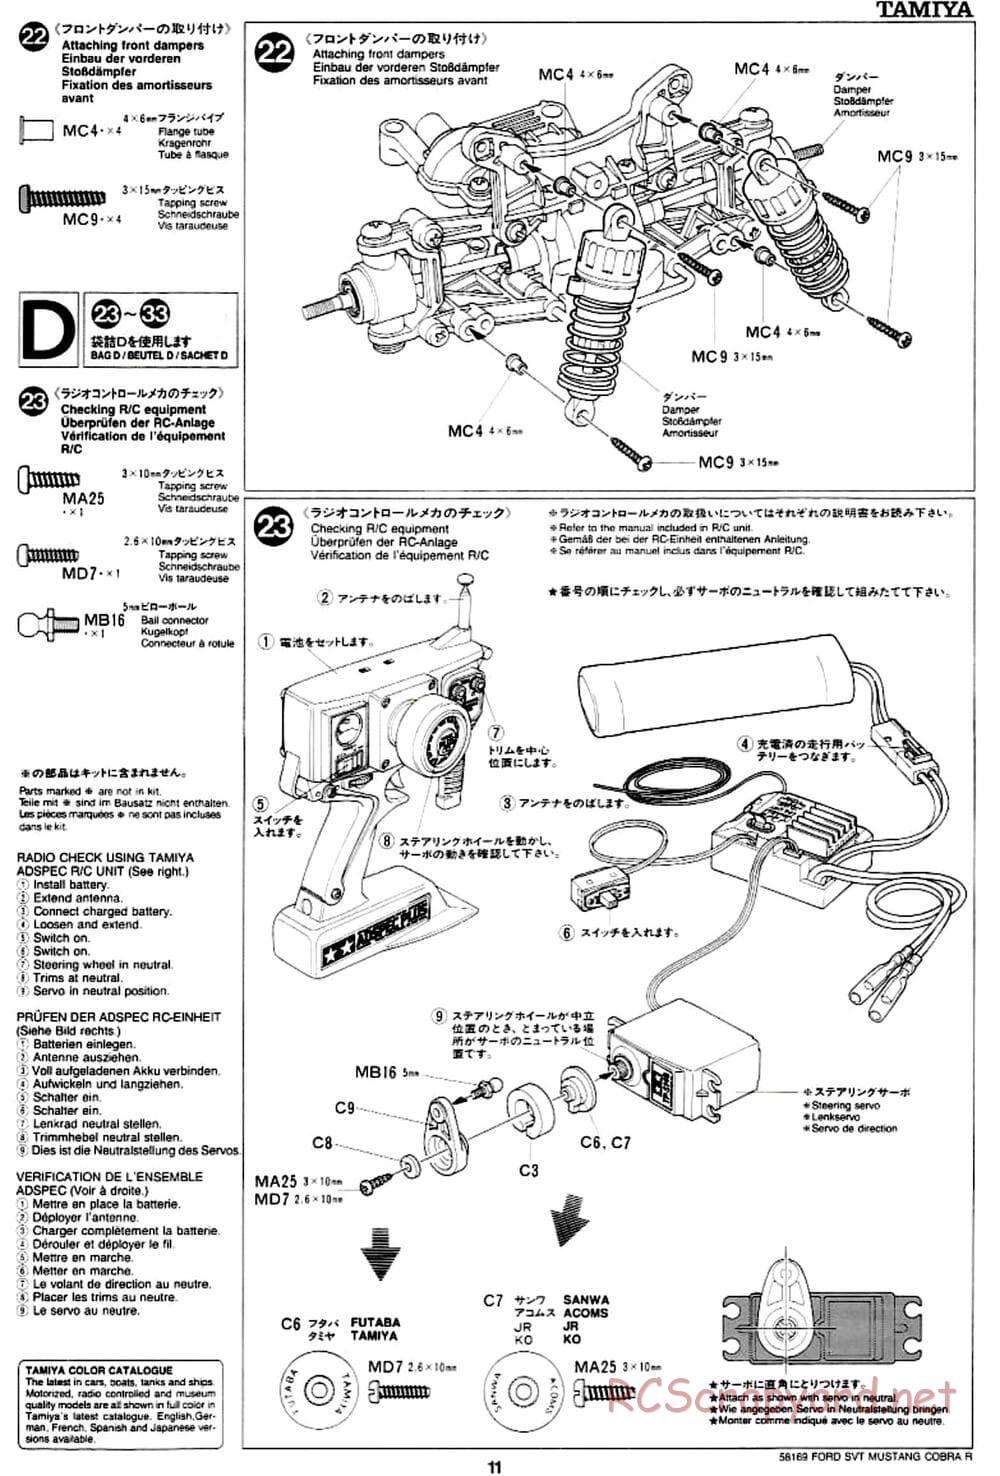 Tamiya - Ford SVT Mustang Cobra-R - TA-02 Chassis - Manual - Page 11